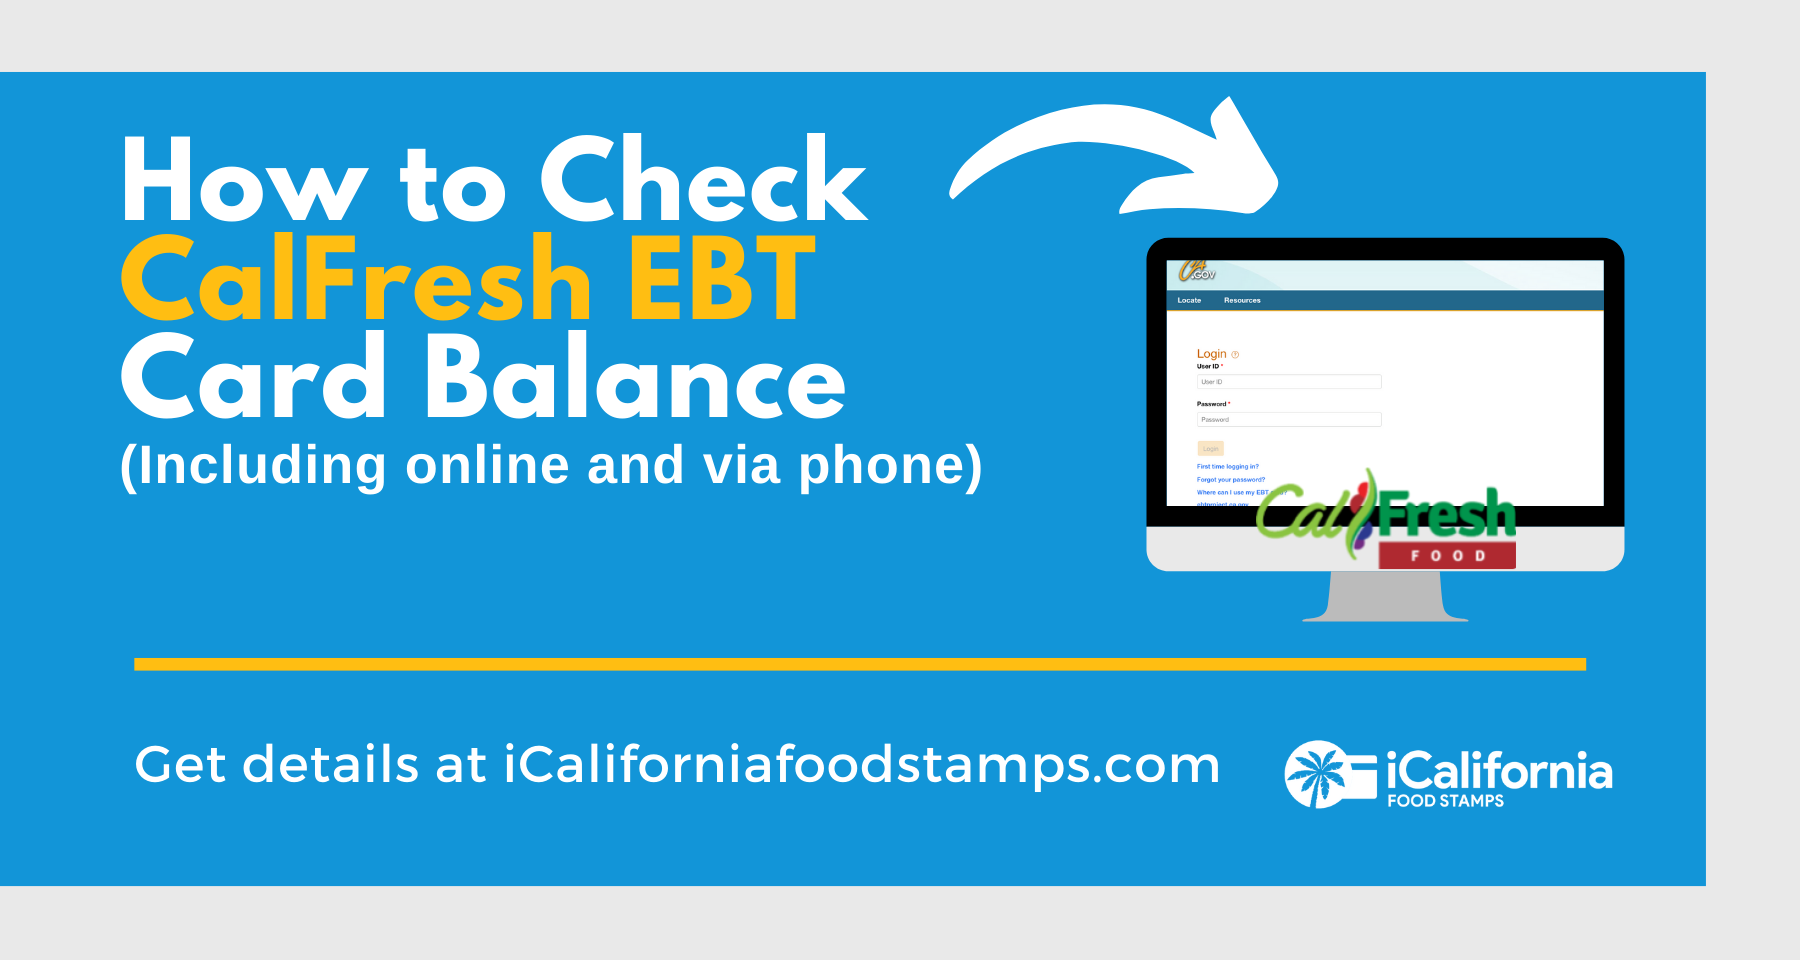 "California CalFresh EBT Card Balance"